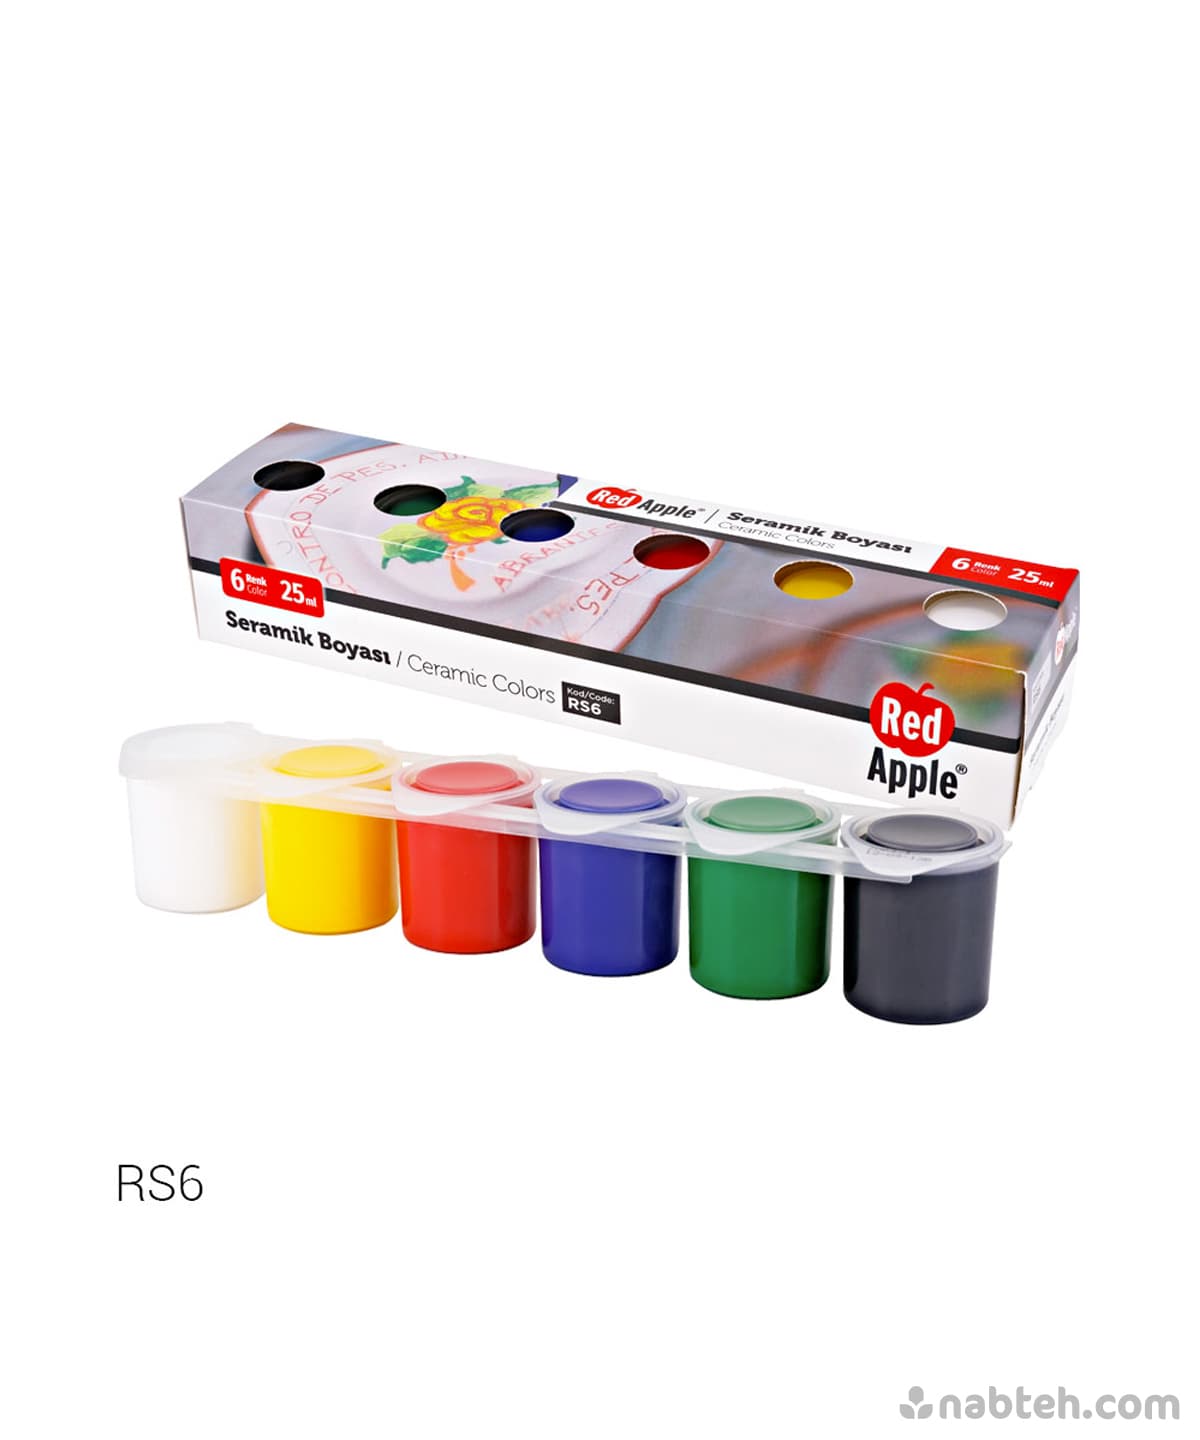 shop Red Apple Paint Colors, Ceramic Colors, Glass Colors, Acrylic paint Colors online